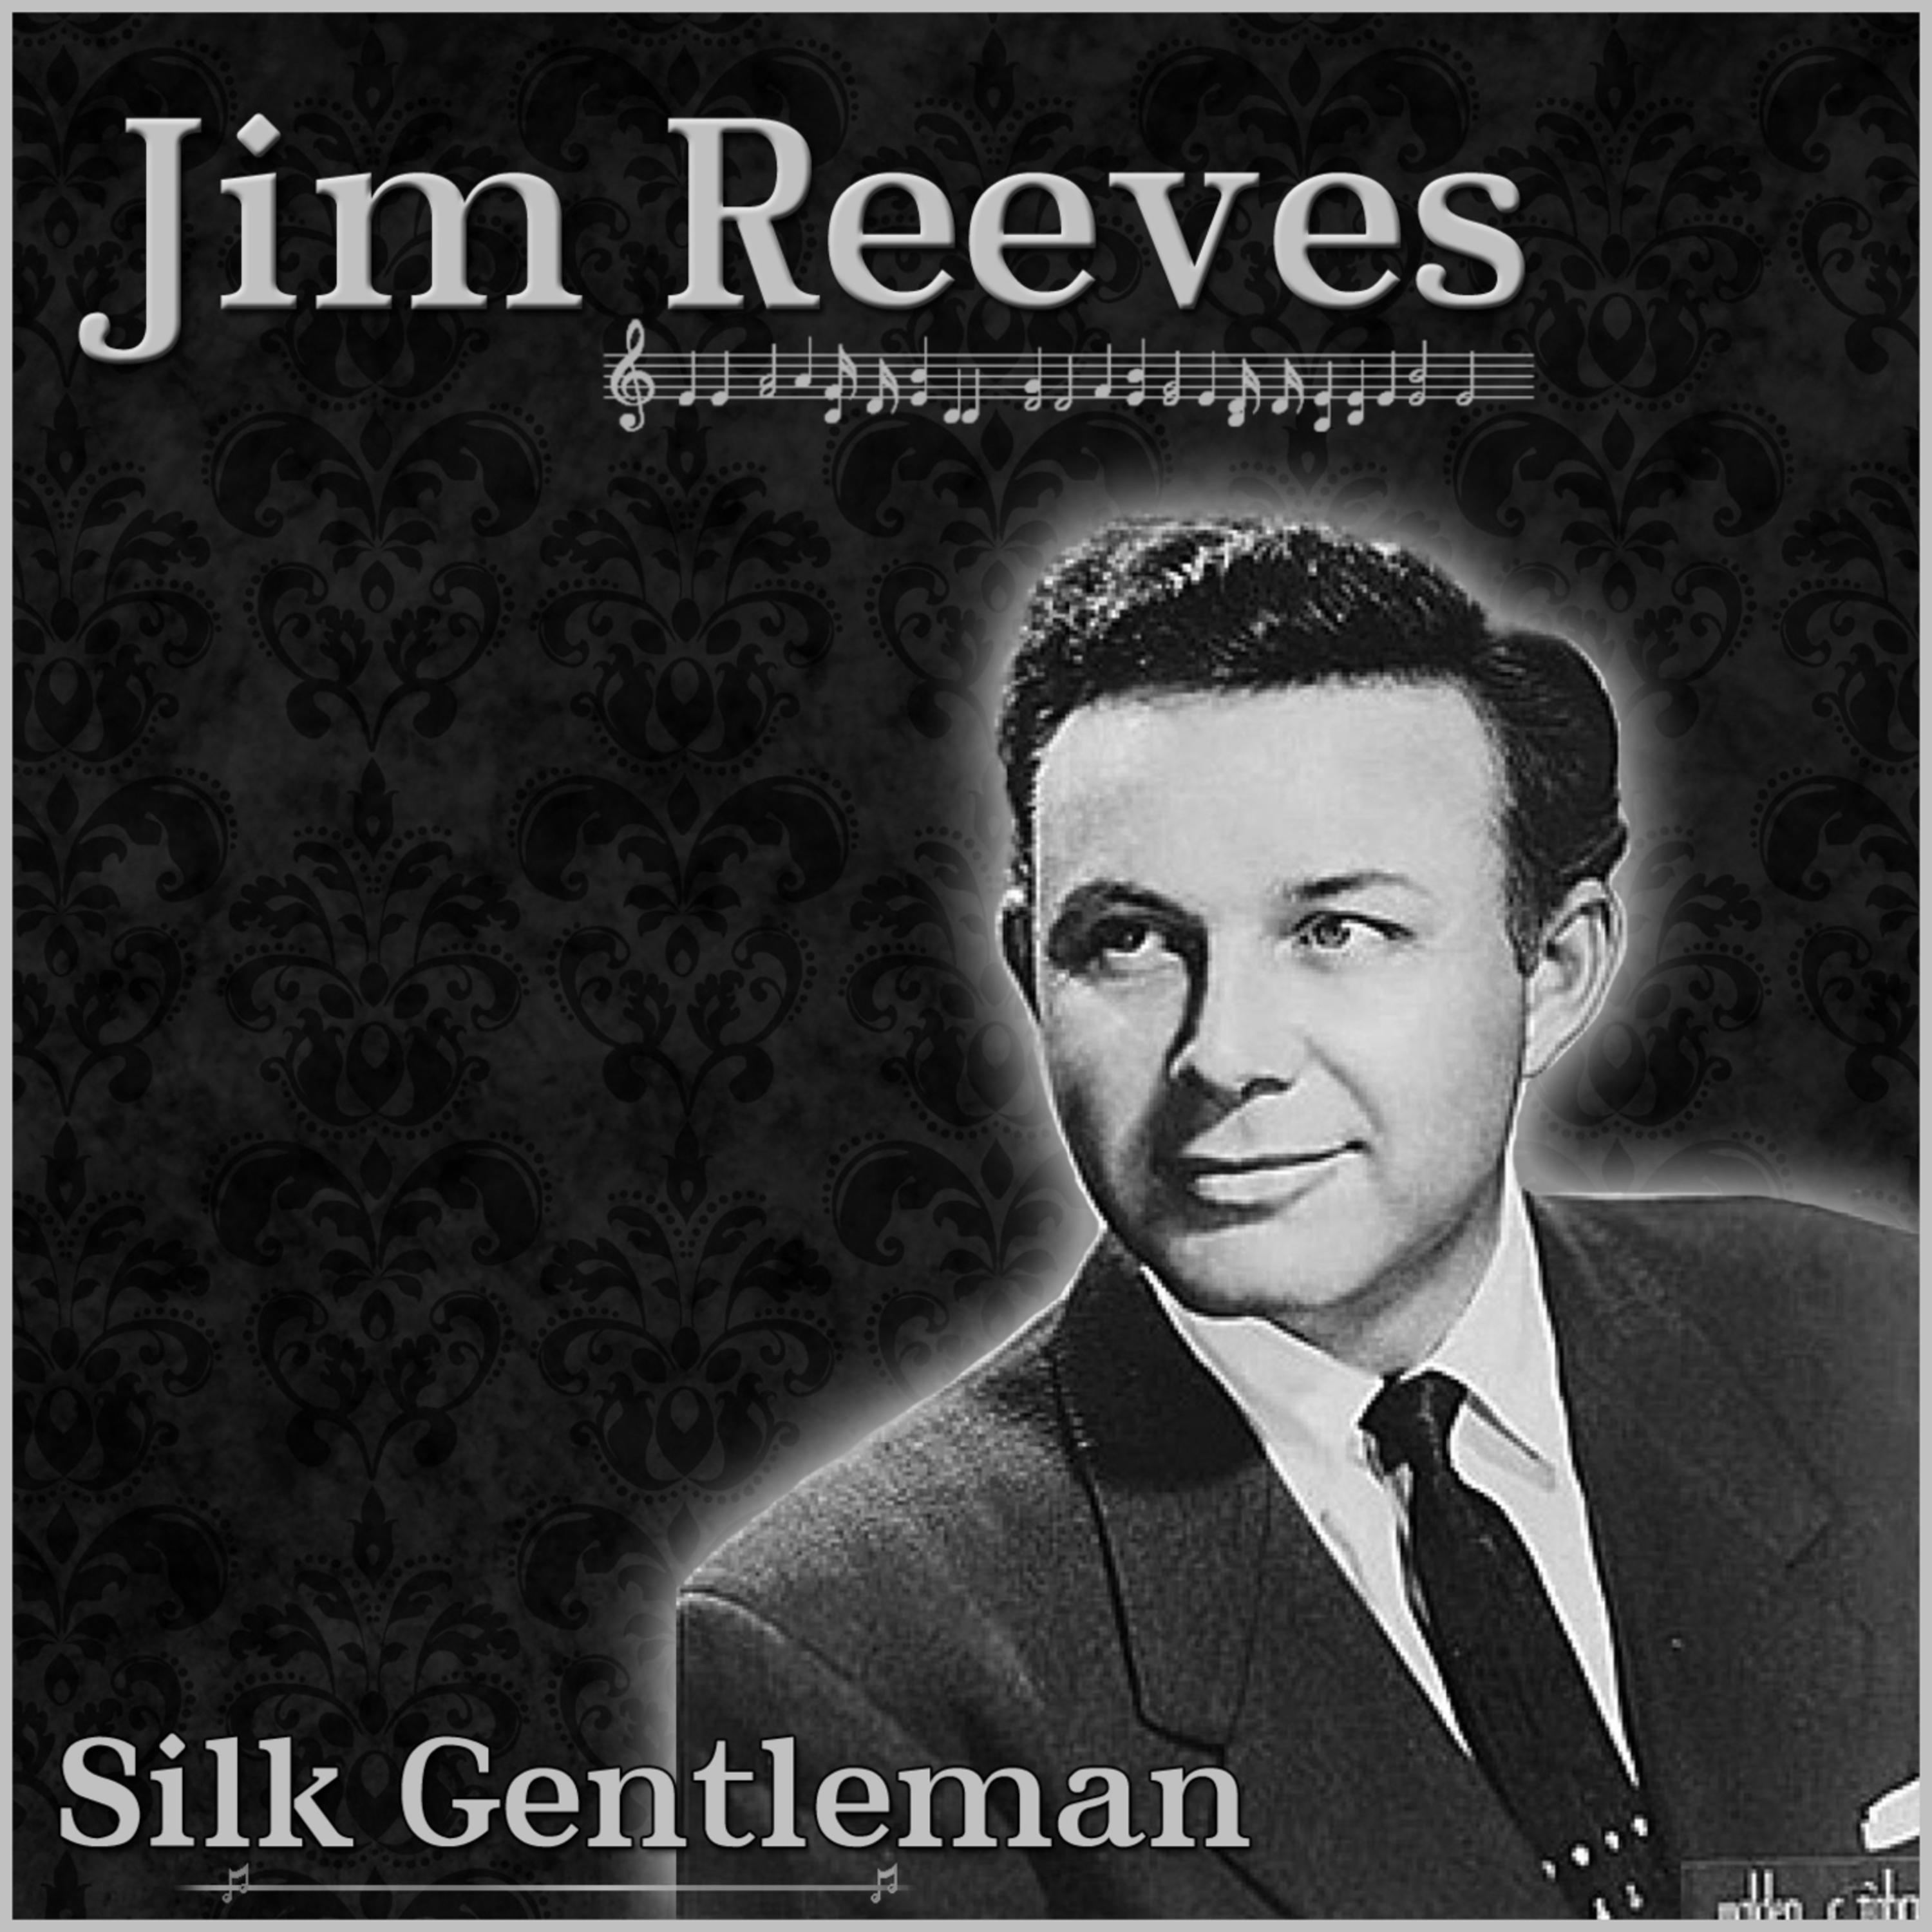 Jim Reeves - The Silk Gentleman